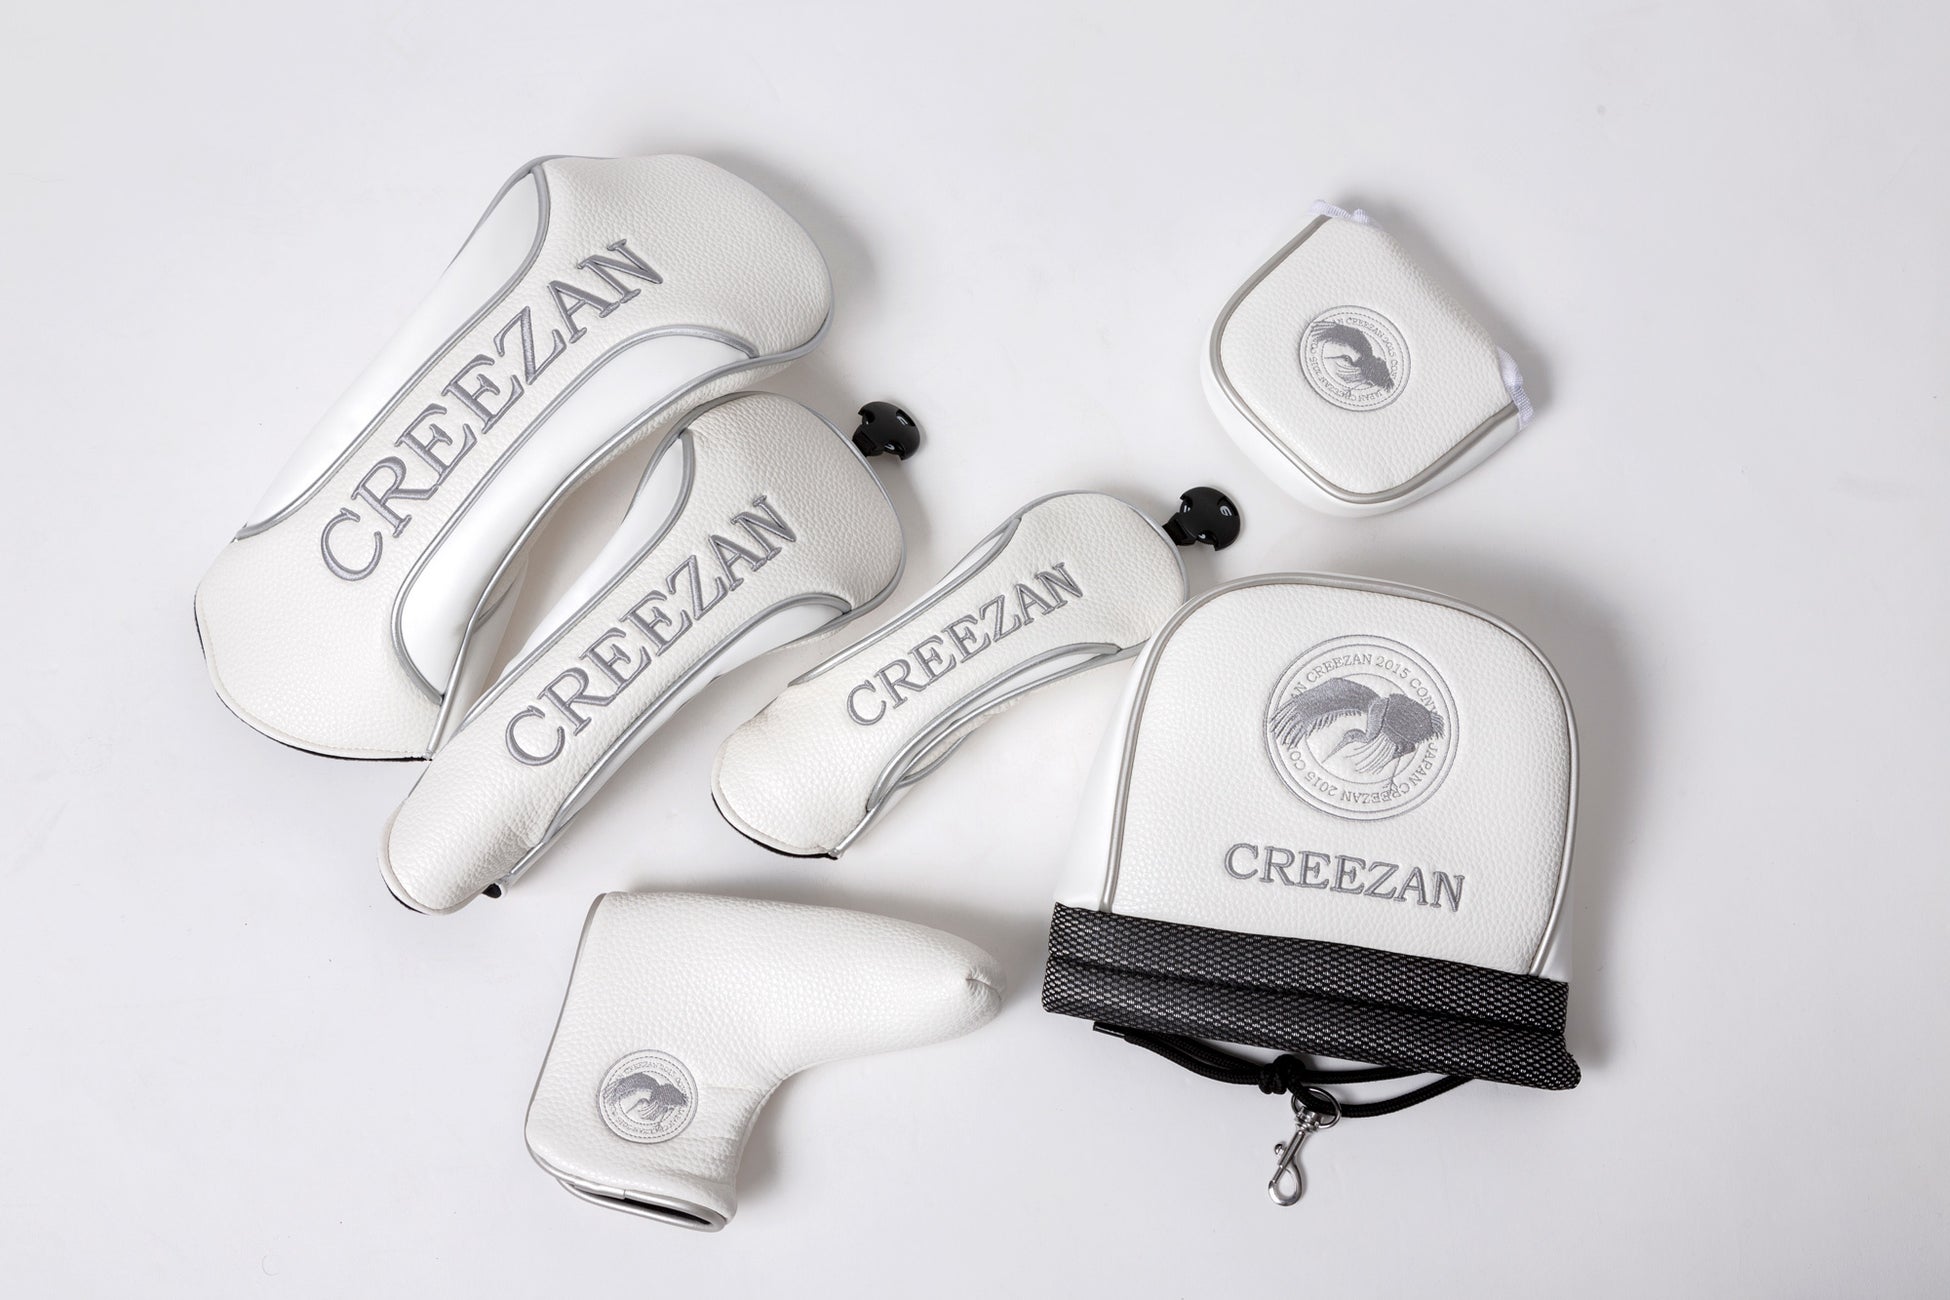 日本一の鞄生産地 豊岡発のバッグブランド  “CREEZAN”のポップアップストアが「イセタン 羽田ストア」に登場！8月3日(水) から 8月22日(月)の期間で展開のサブ画像7_※デザイン・仕様を一部変更する可能性がございます。